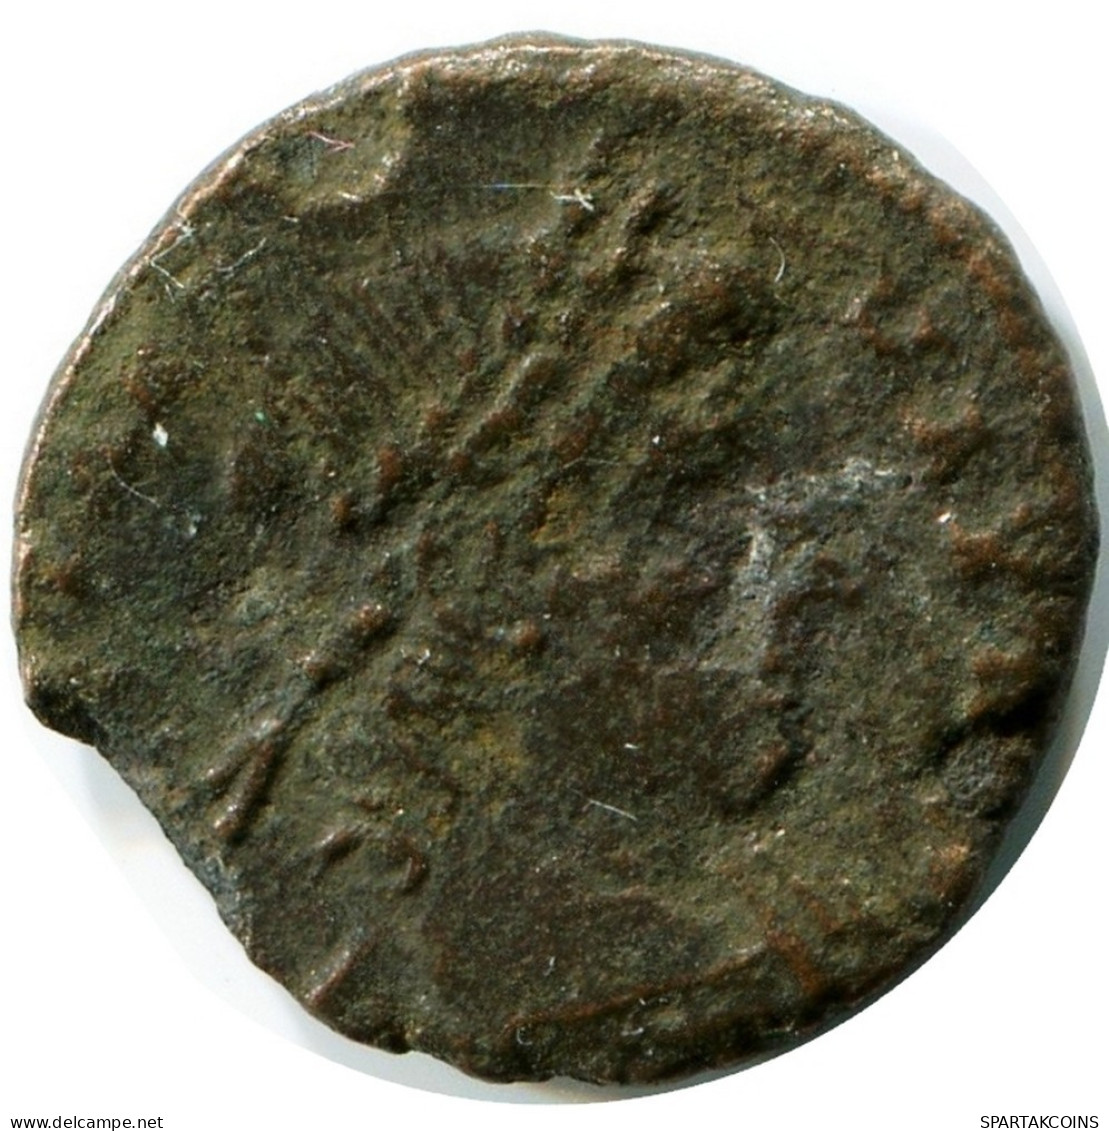 ROMAN Pièce MINTED IN ANTIOCH FOUND IN IHNASYAH HOARD EGYPT #ANC11284.14.F.A - Der Christlischen Kaiser (307 / 363)